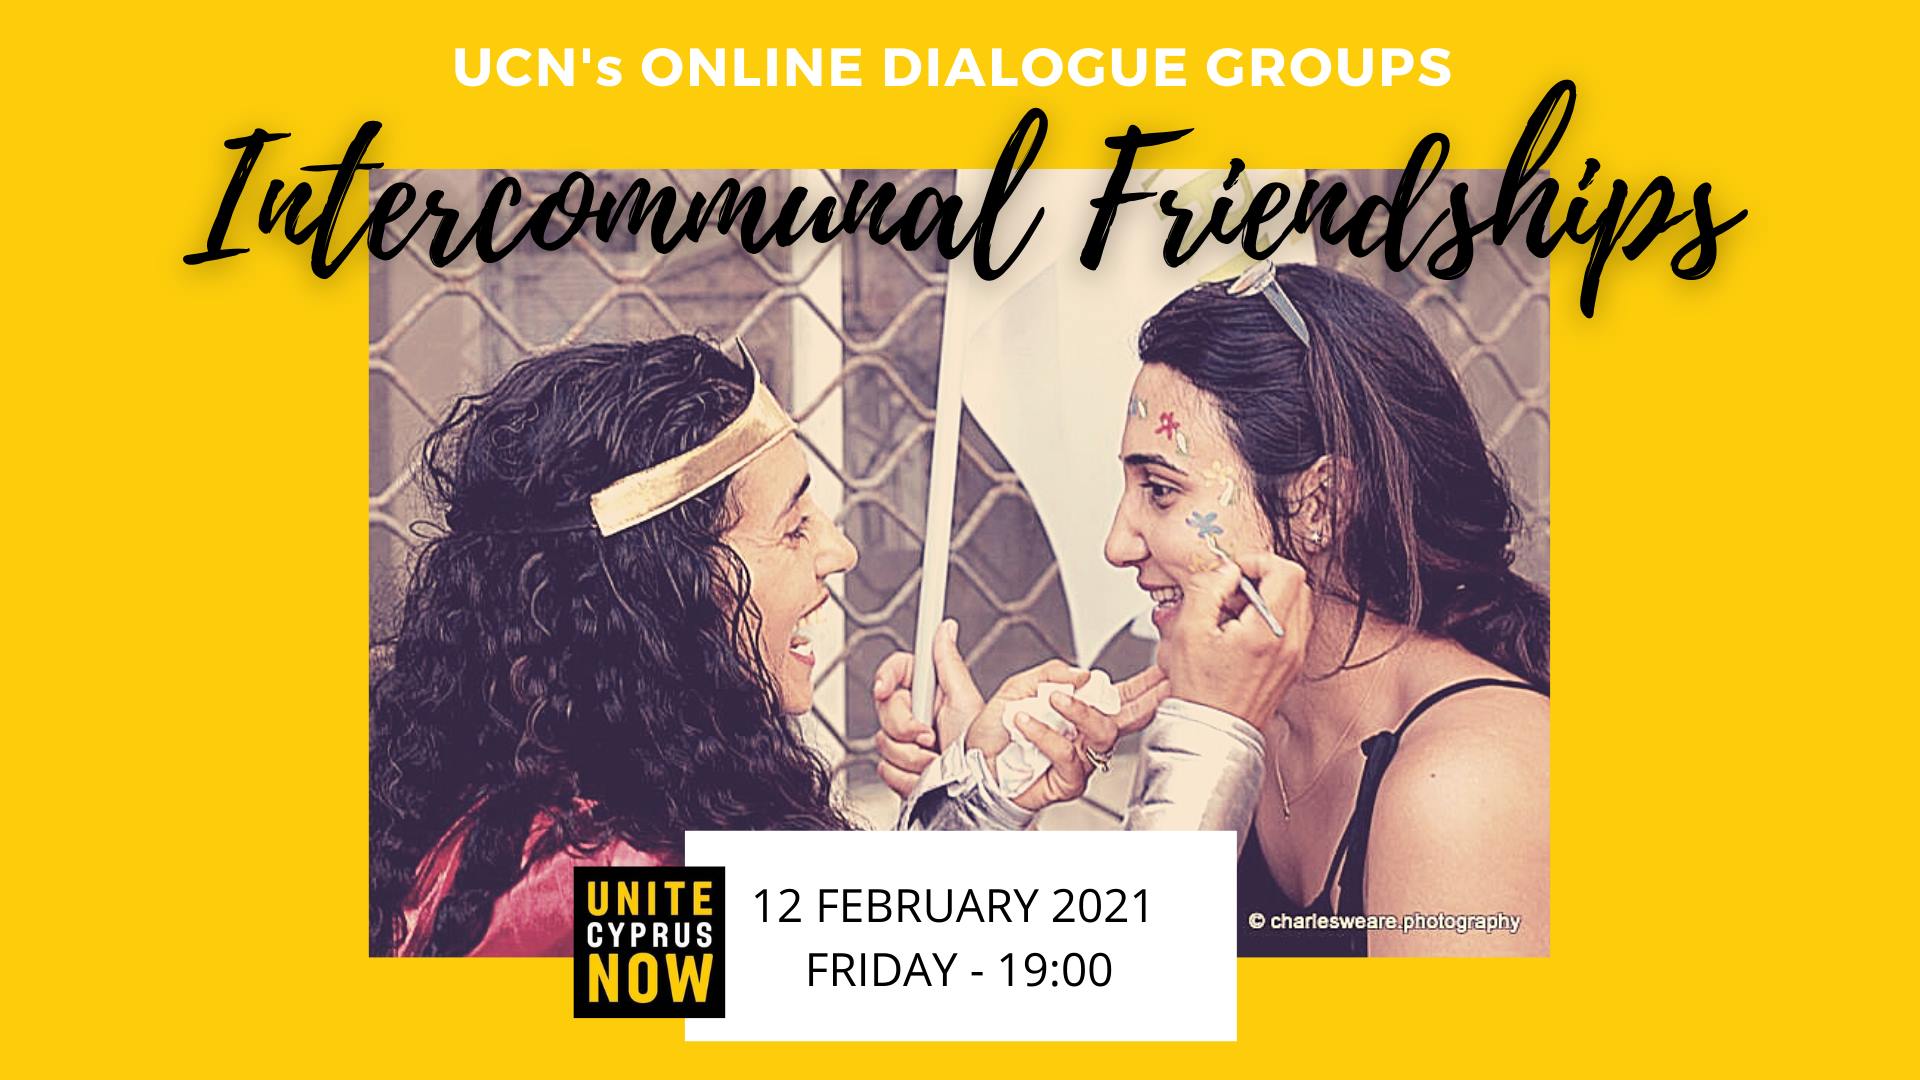 intercommunal friendships dialogue